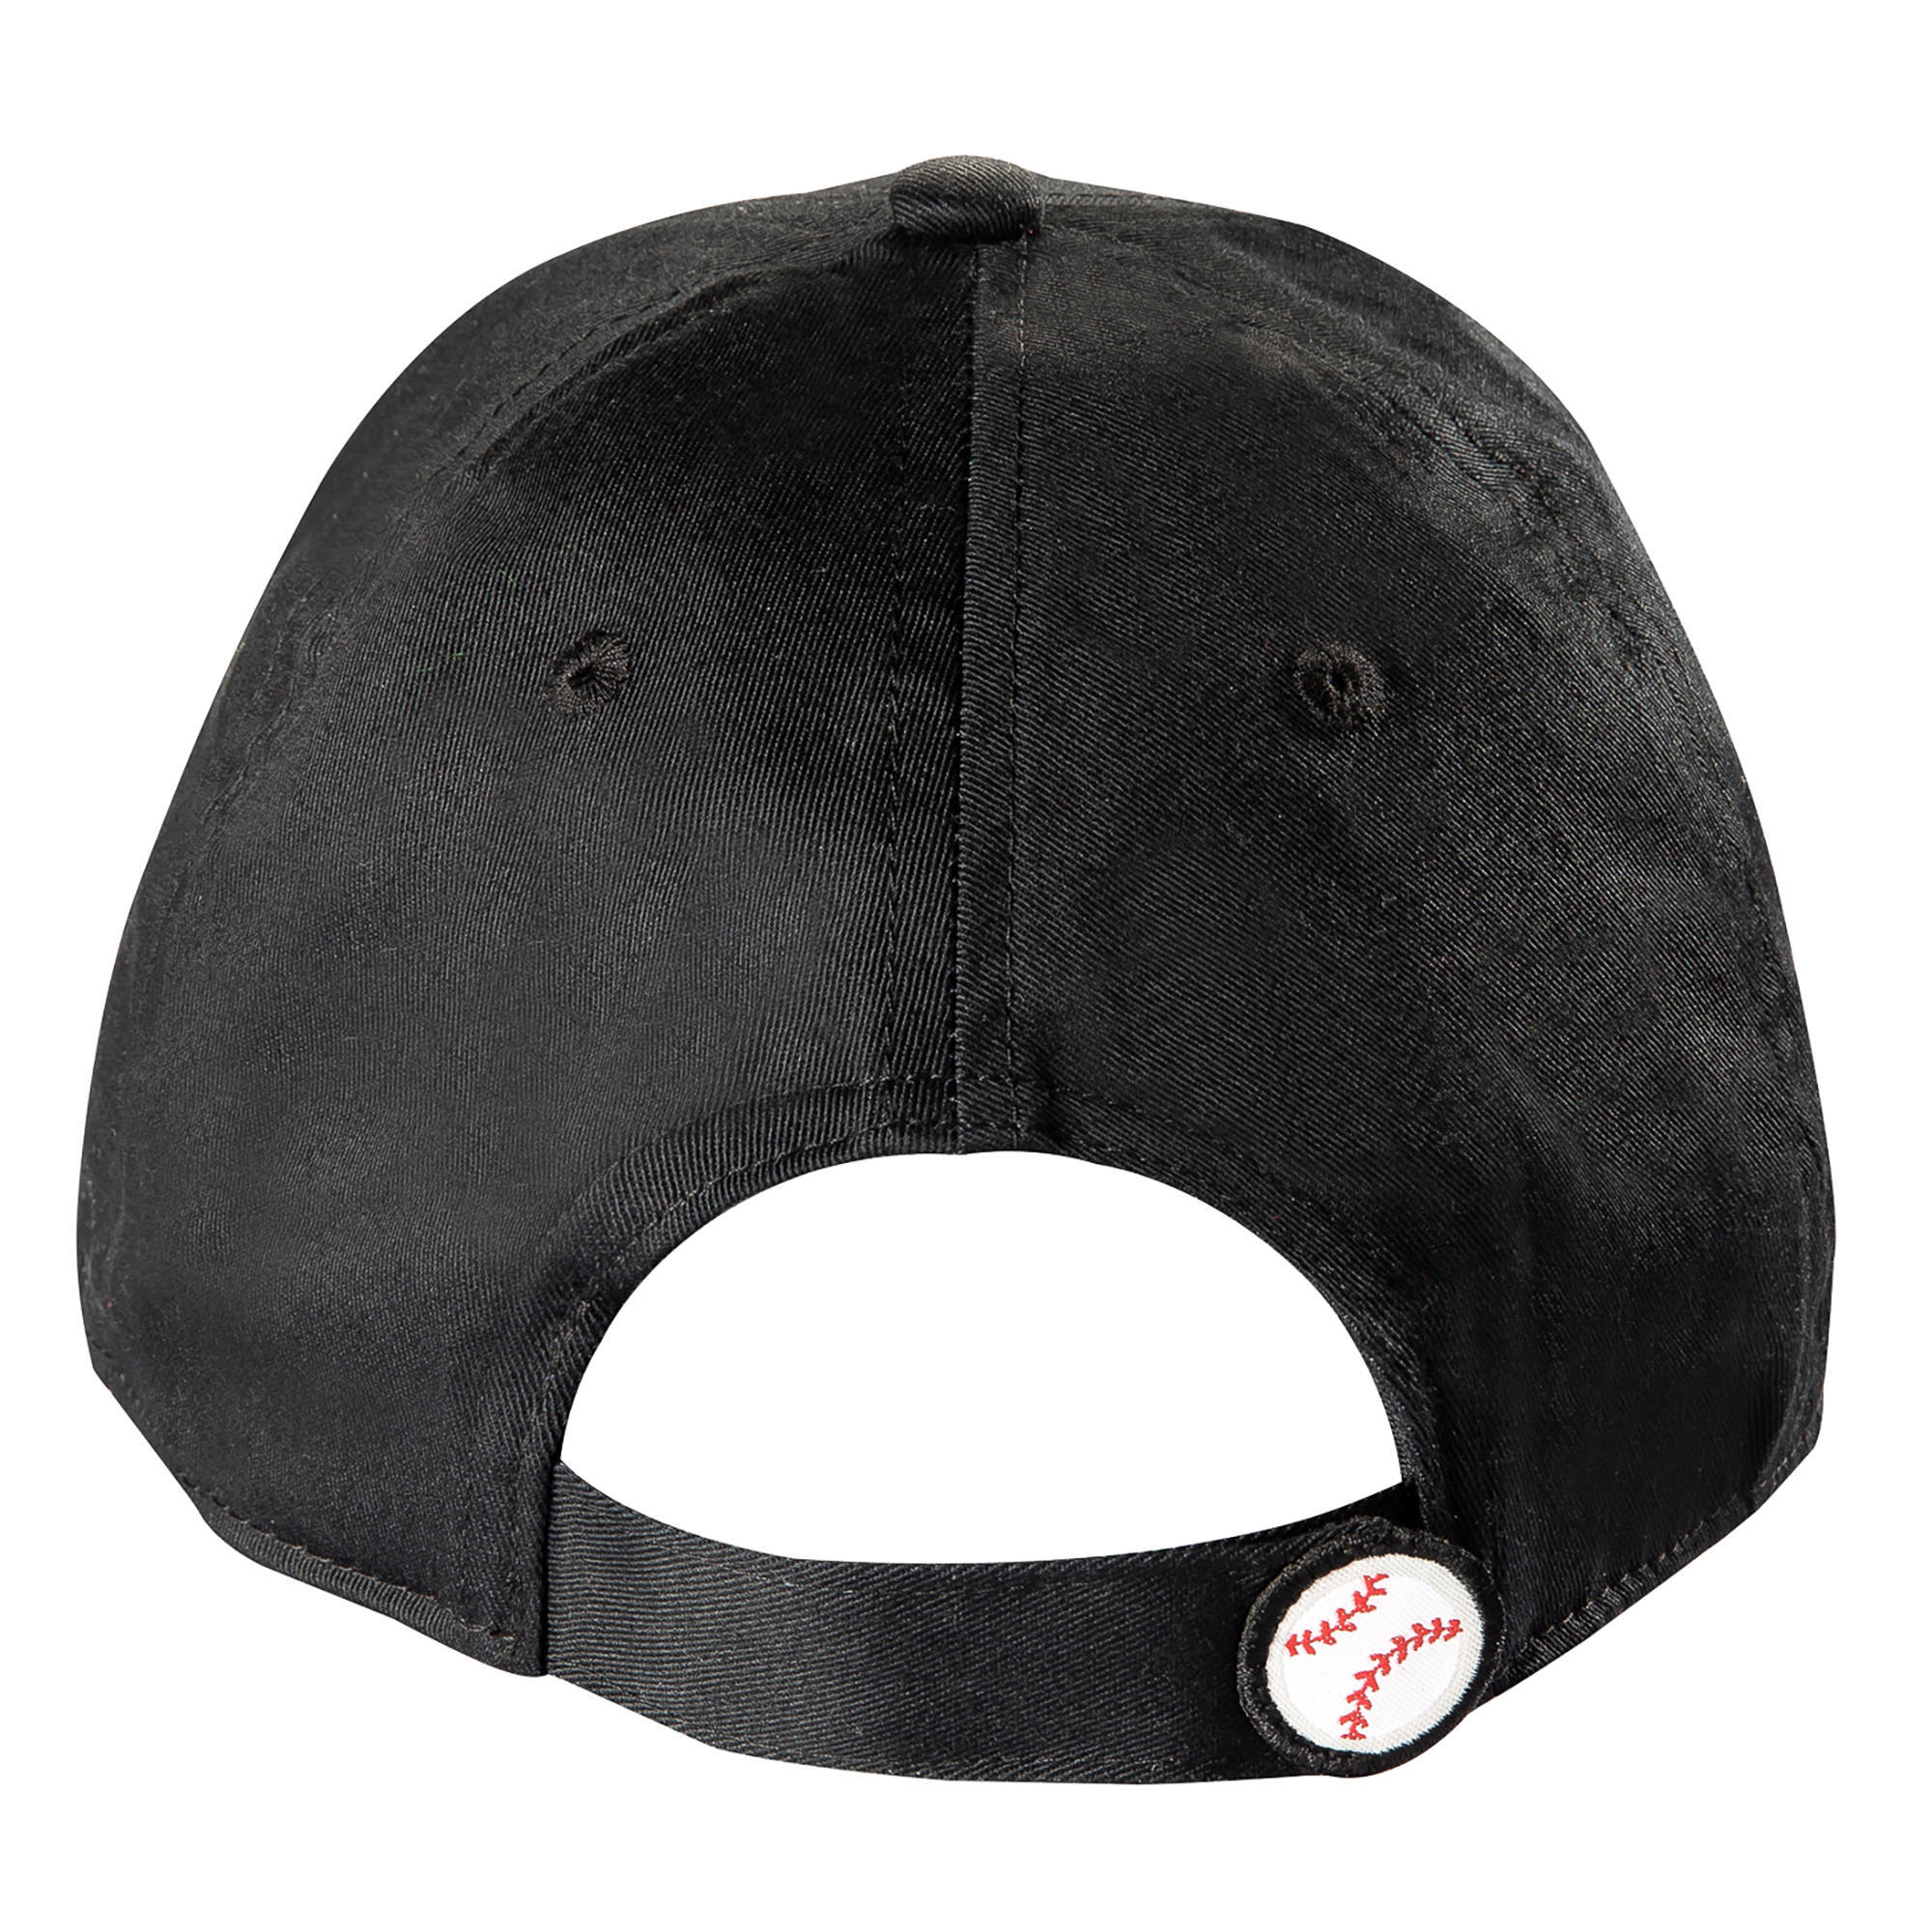 BASEBALL CAP BA500 Black JR 3/8